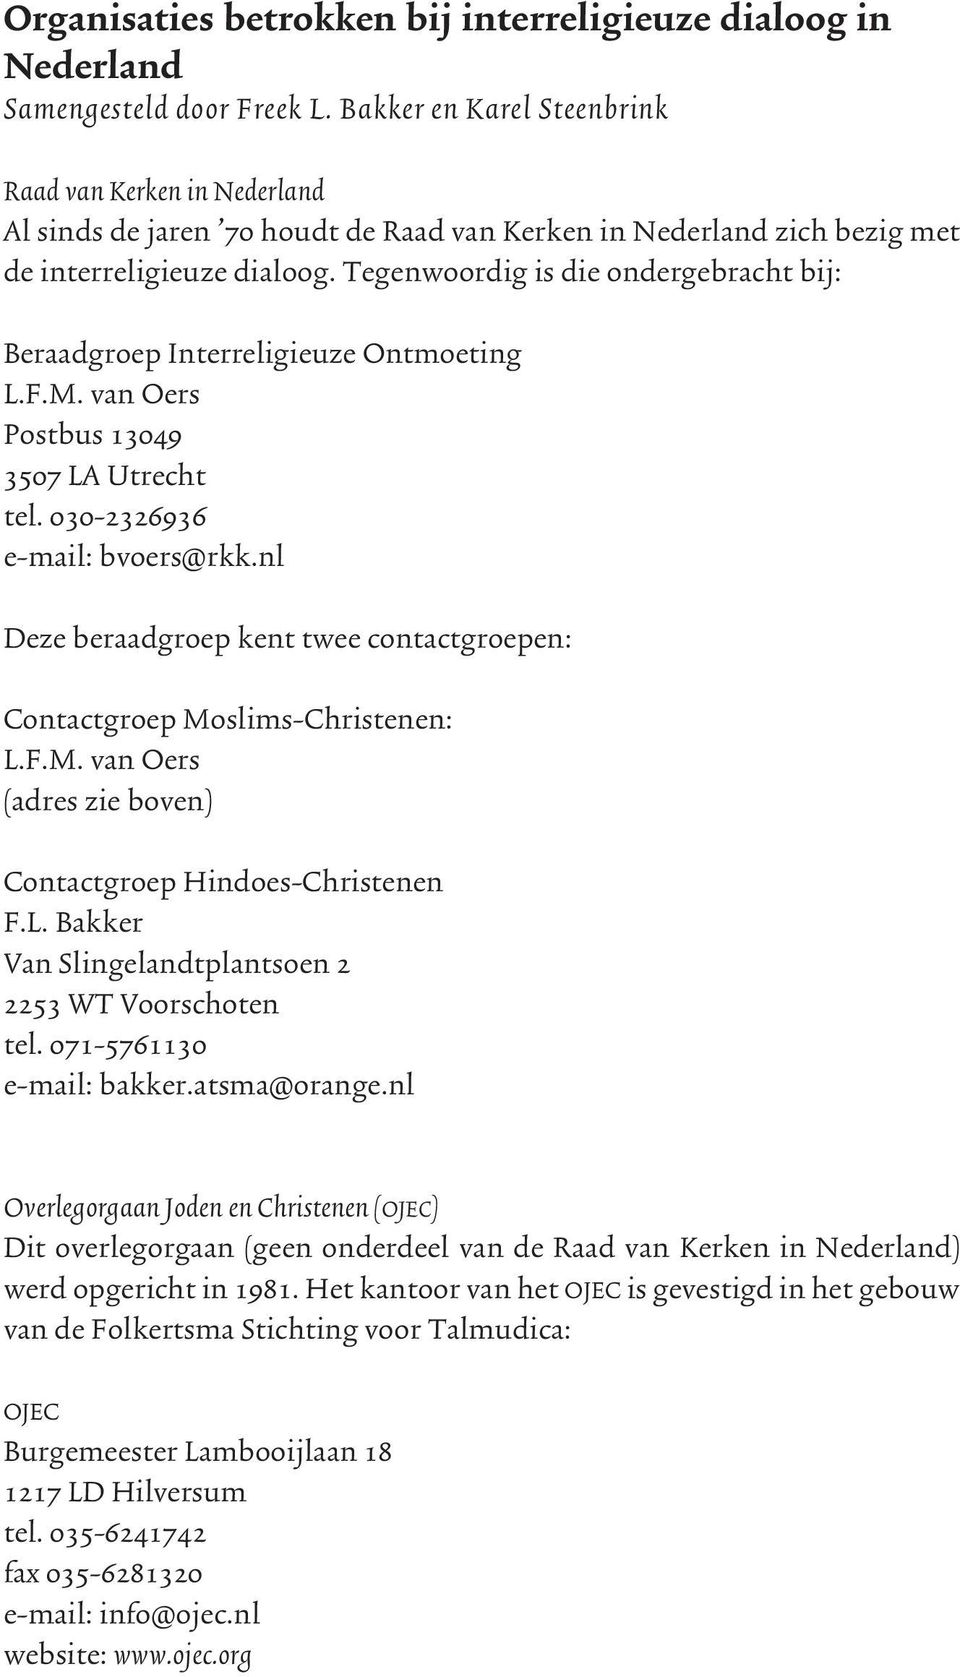 Tegenwoordig is die ondergebracht bij: Beraadgroep Interreligieuze Ontmoeting L.F.M. van Oers Postbus 13049 3507 LA Utrecht tel. 030-2326936 e-mail: bvoers@rkk.